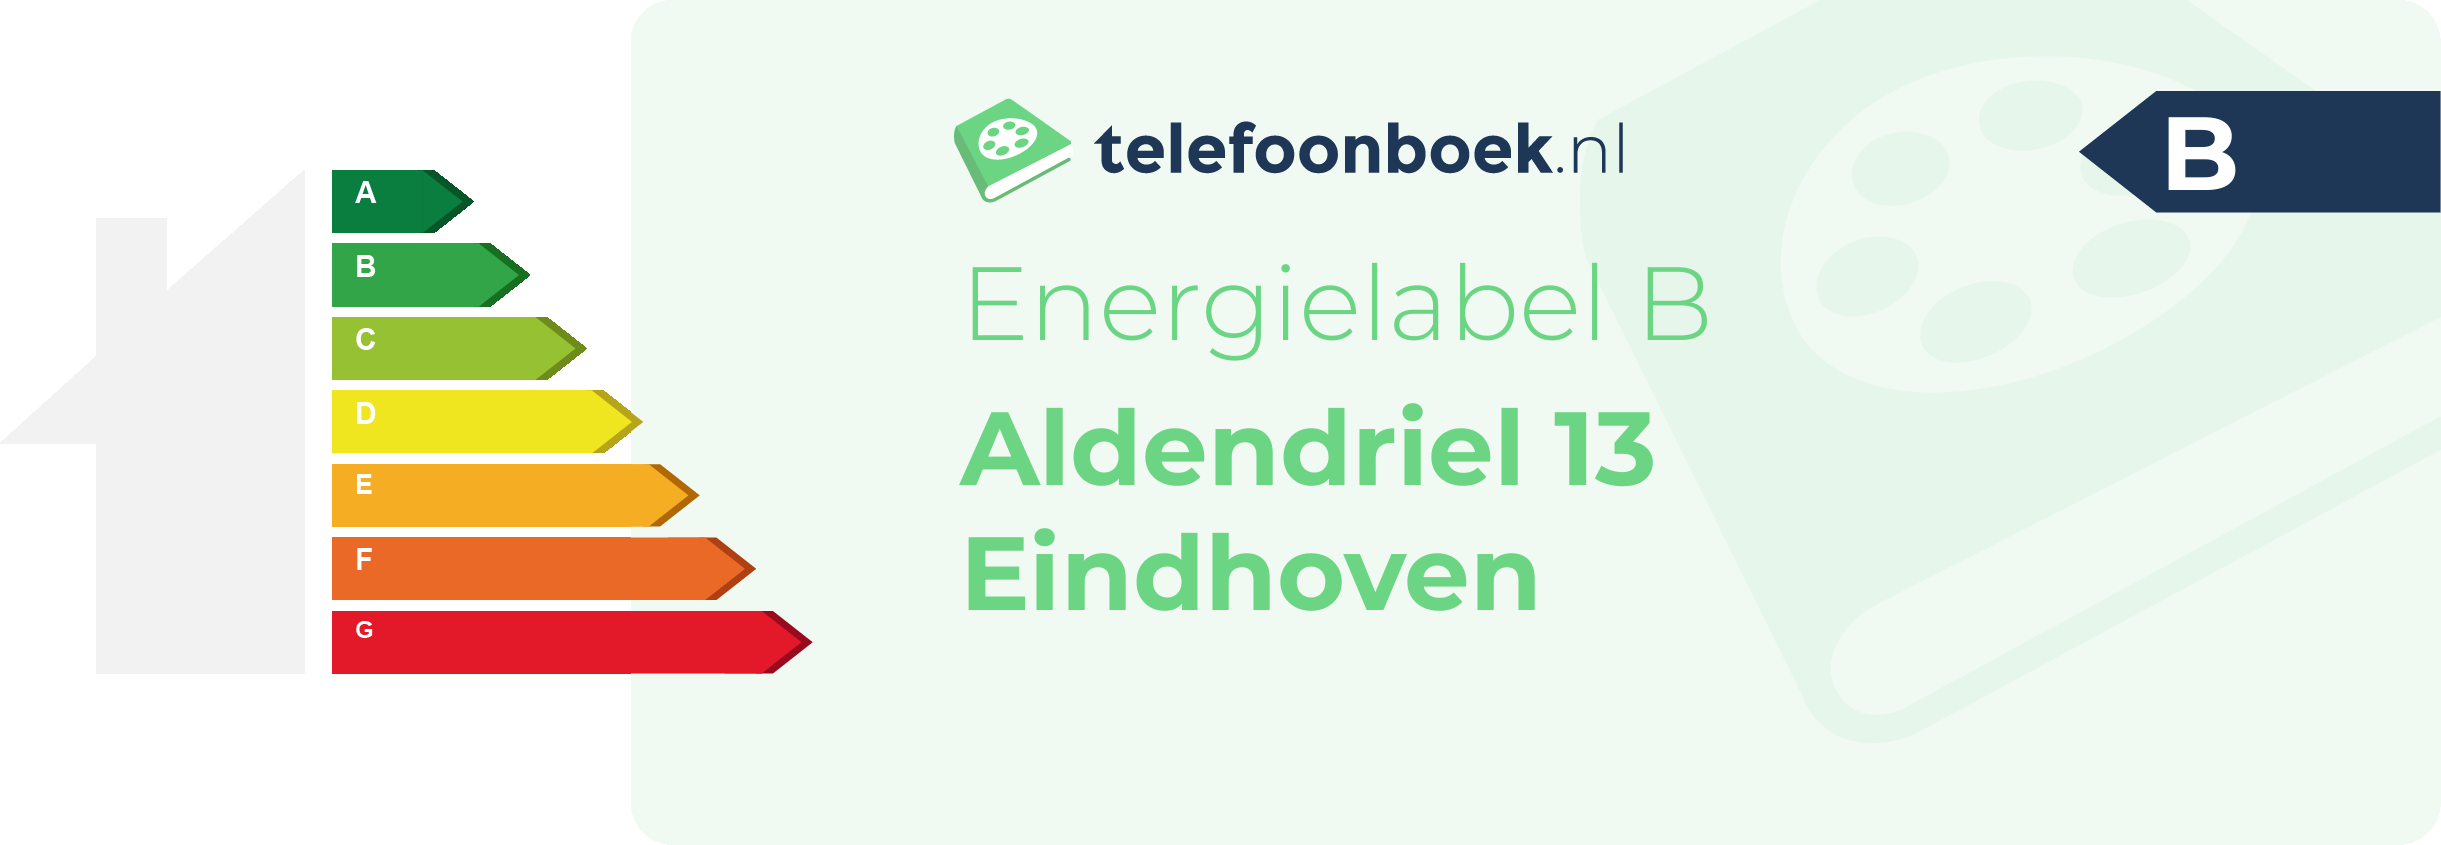 Energielabel Aldendriel 13 Eindhoven